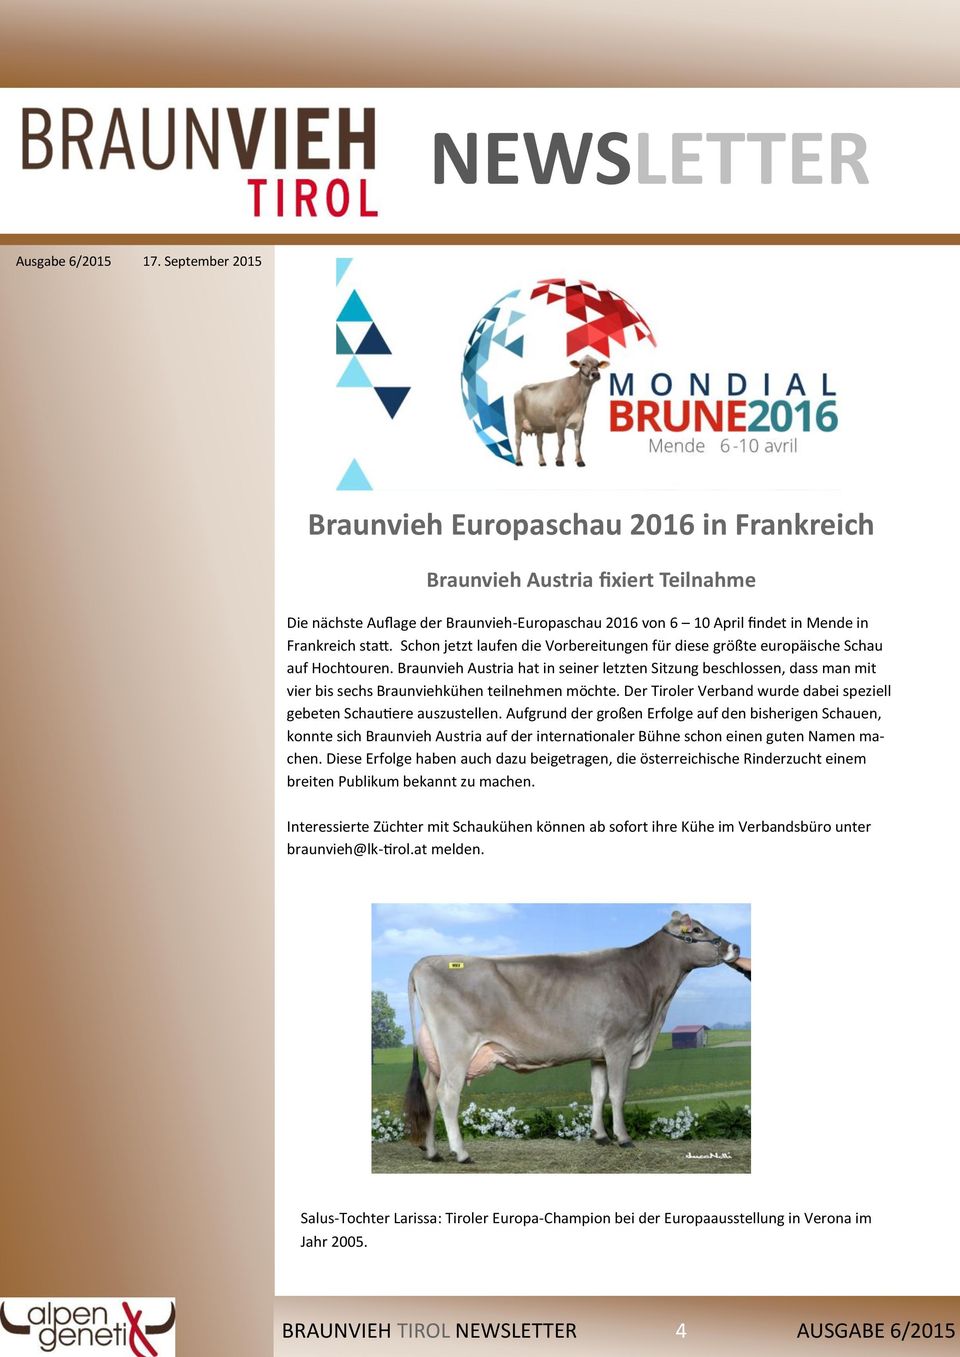 Braunvieh Austria hat in seiner letzten Sitzung beschlossen, dass man mit vier bis sechs Braunviehkühen teilnehmen möchte. Der Tiroler Verband wurde dabei speziell gebeten Schautiere auszustellen.